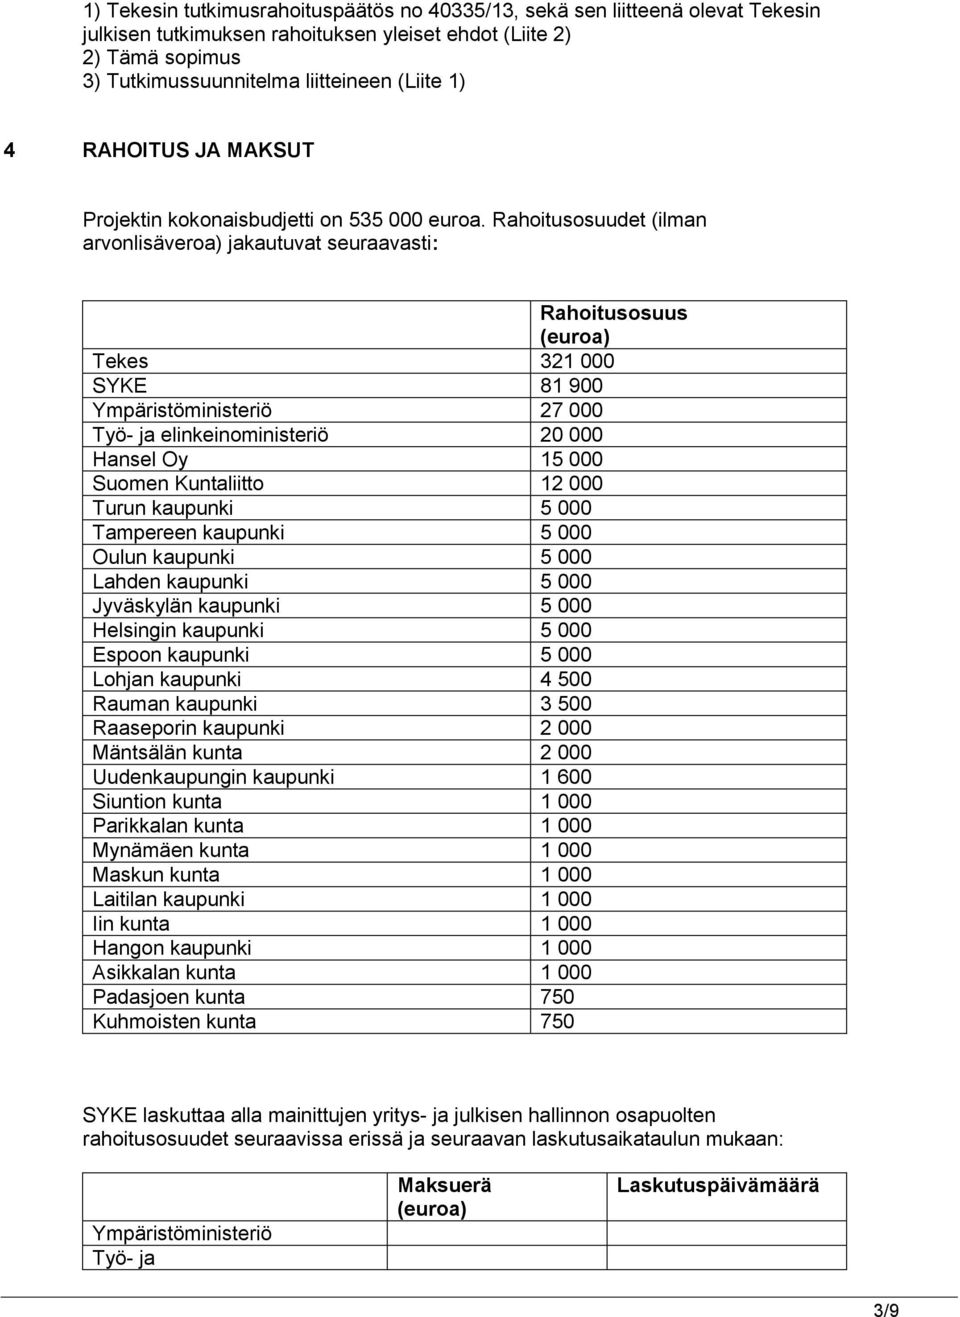 Rahoitusosuudet (ilman arvonlisäveroa) jakautuvat seuraavasti: Rahoitusosuus (euroa) Tekes 321 000 SYKE 81 900 Ympäristöministeriö 27 000 Työ- ja elinkeinoministeriö 20 000 Hansel Oy 15 000 Suomen